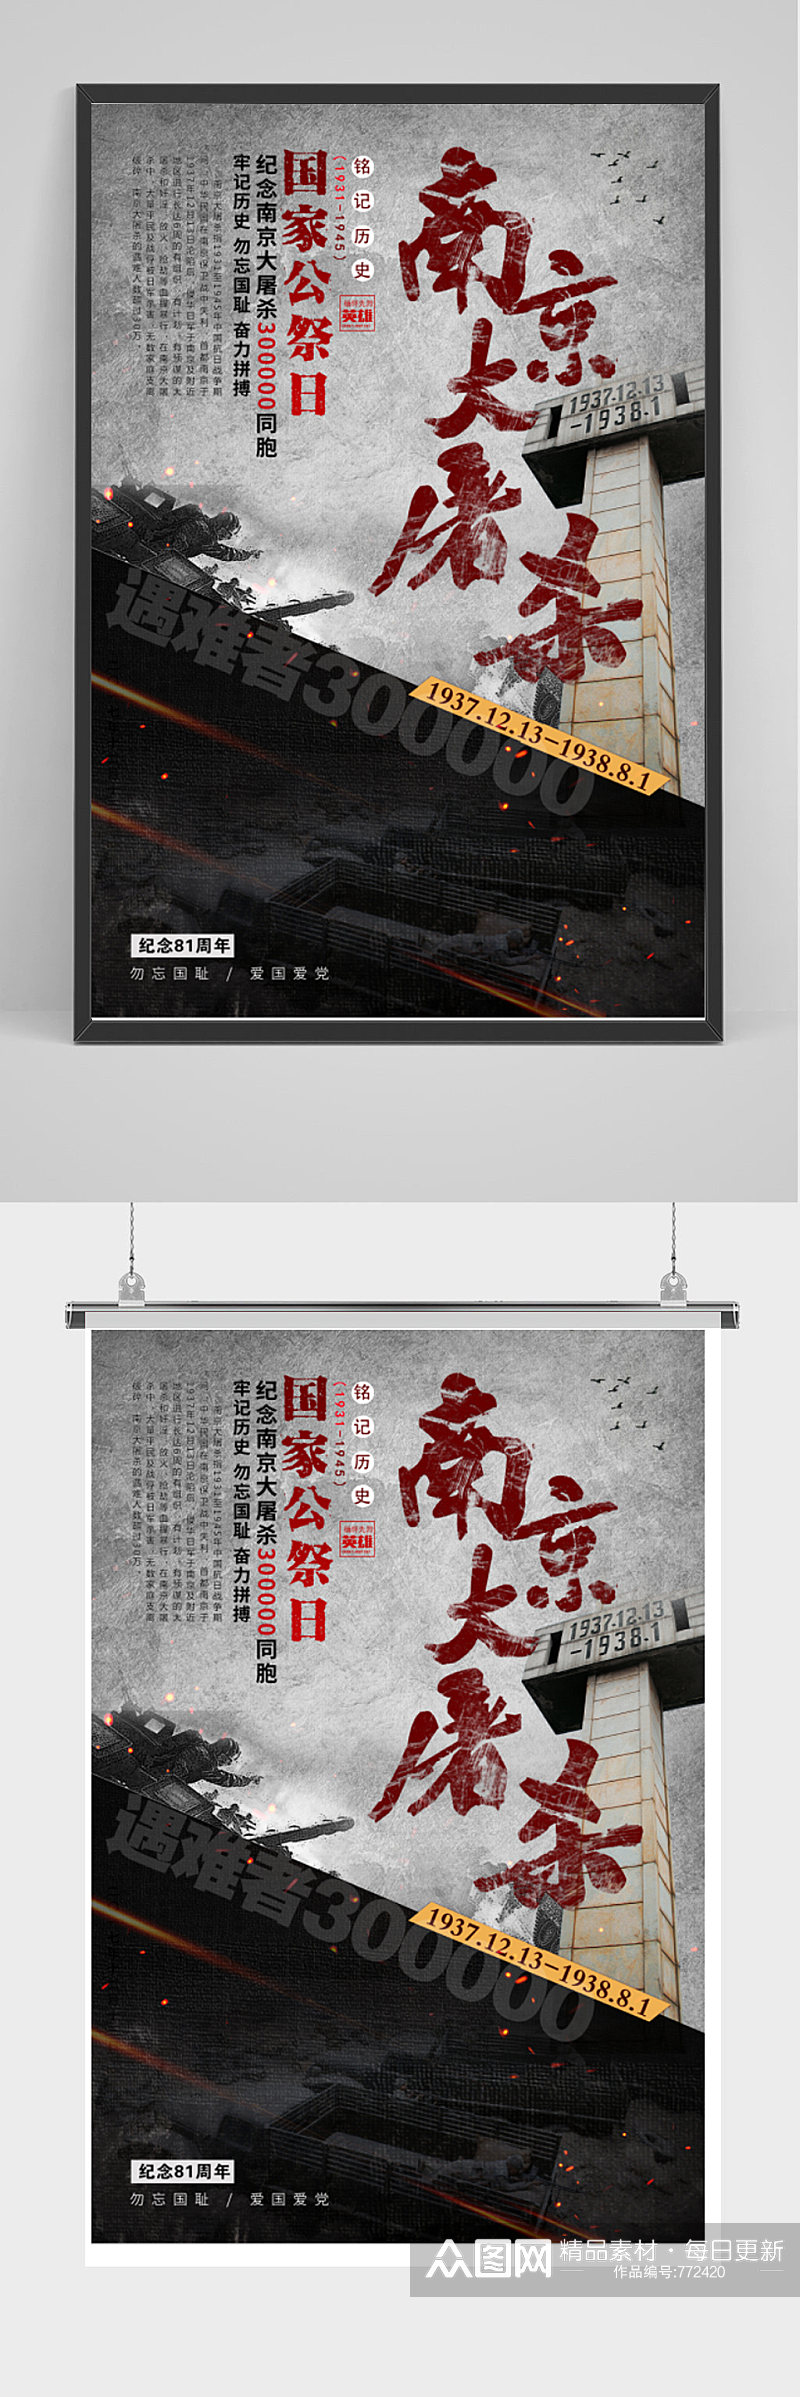 国家公祭日南京大屠杀海报素材